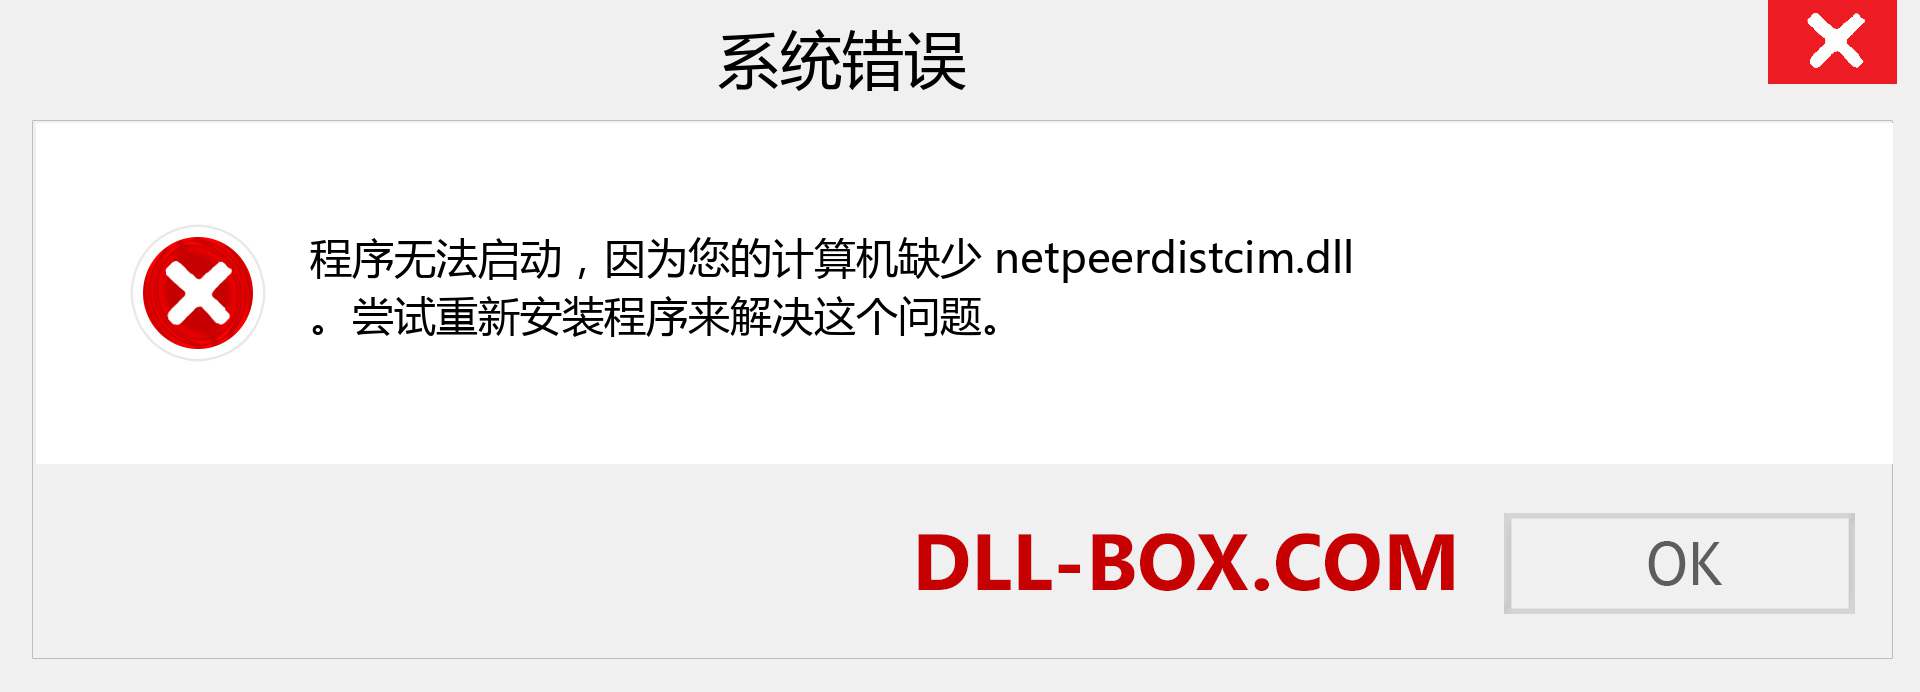 netpeerdistcim.dll 文件丢失？。 适用于 Windows 7、8、10 的下载 - 修复 Windows、照片、图像上的 netpeerdistcim dll 丢失错误